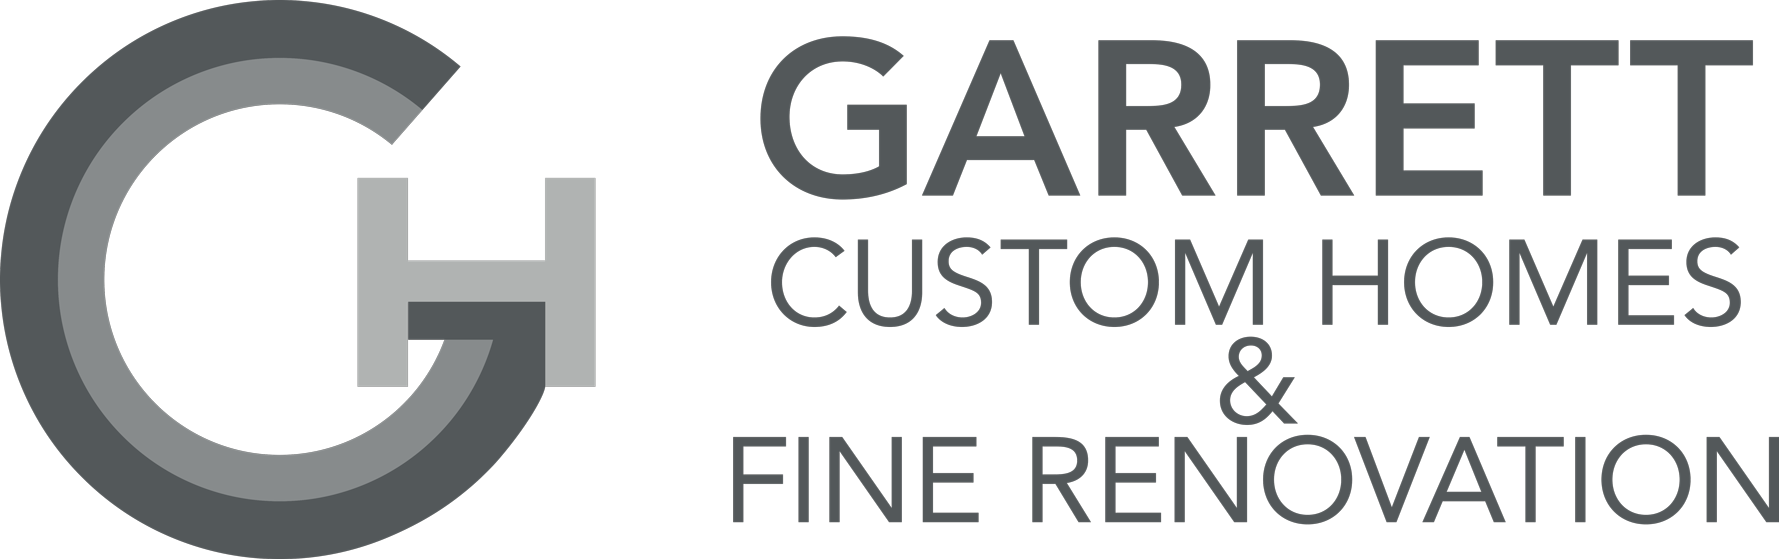 Garrett Custom Homes & Fine Renovation